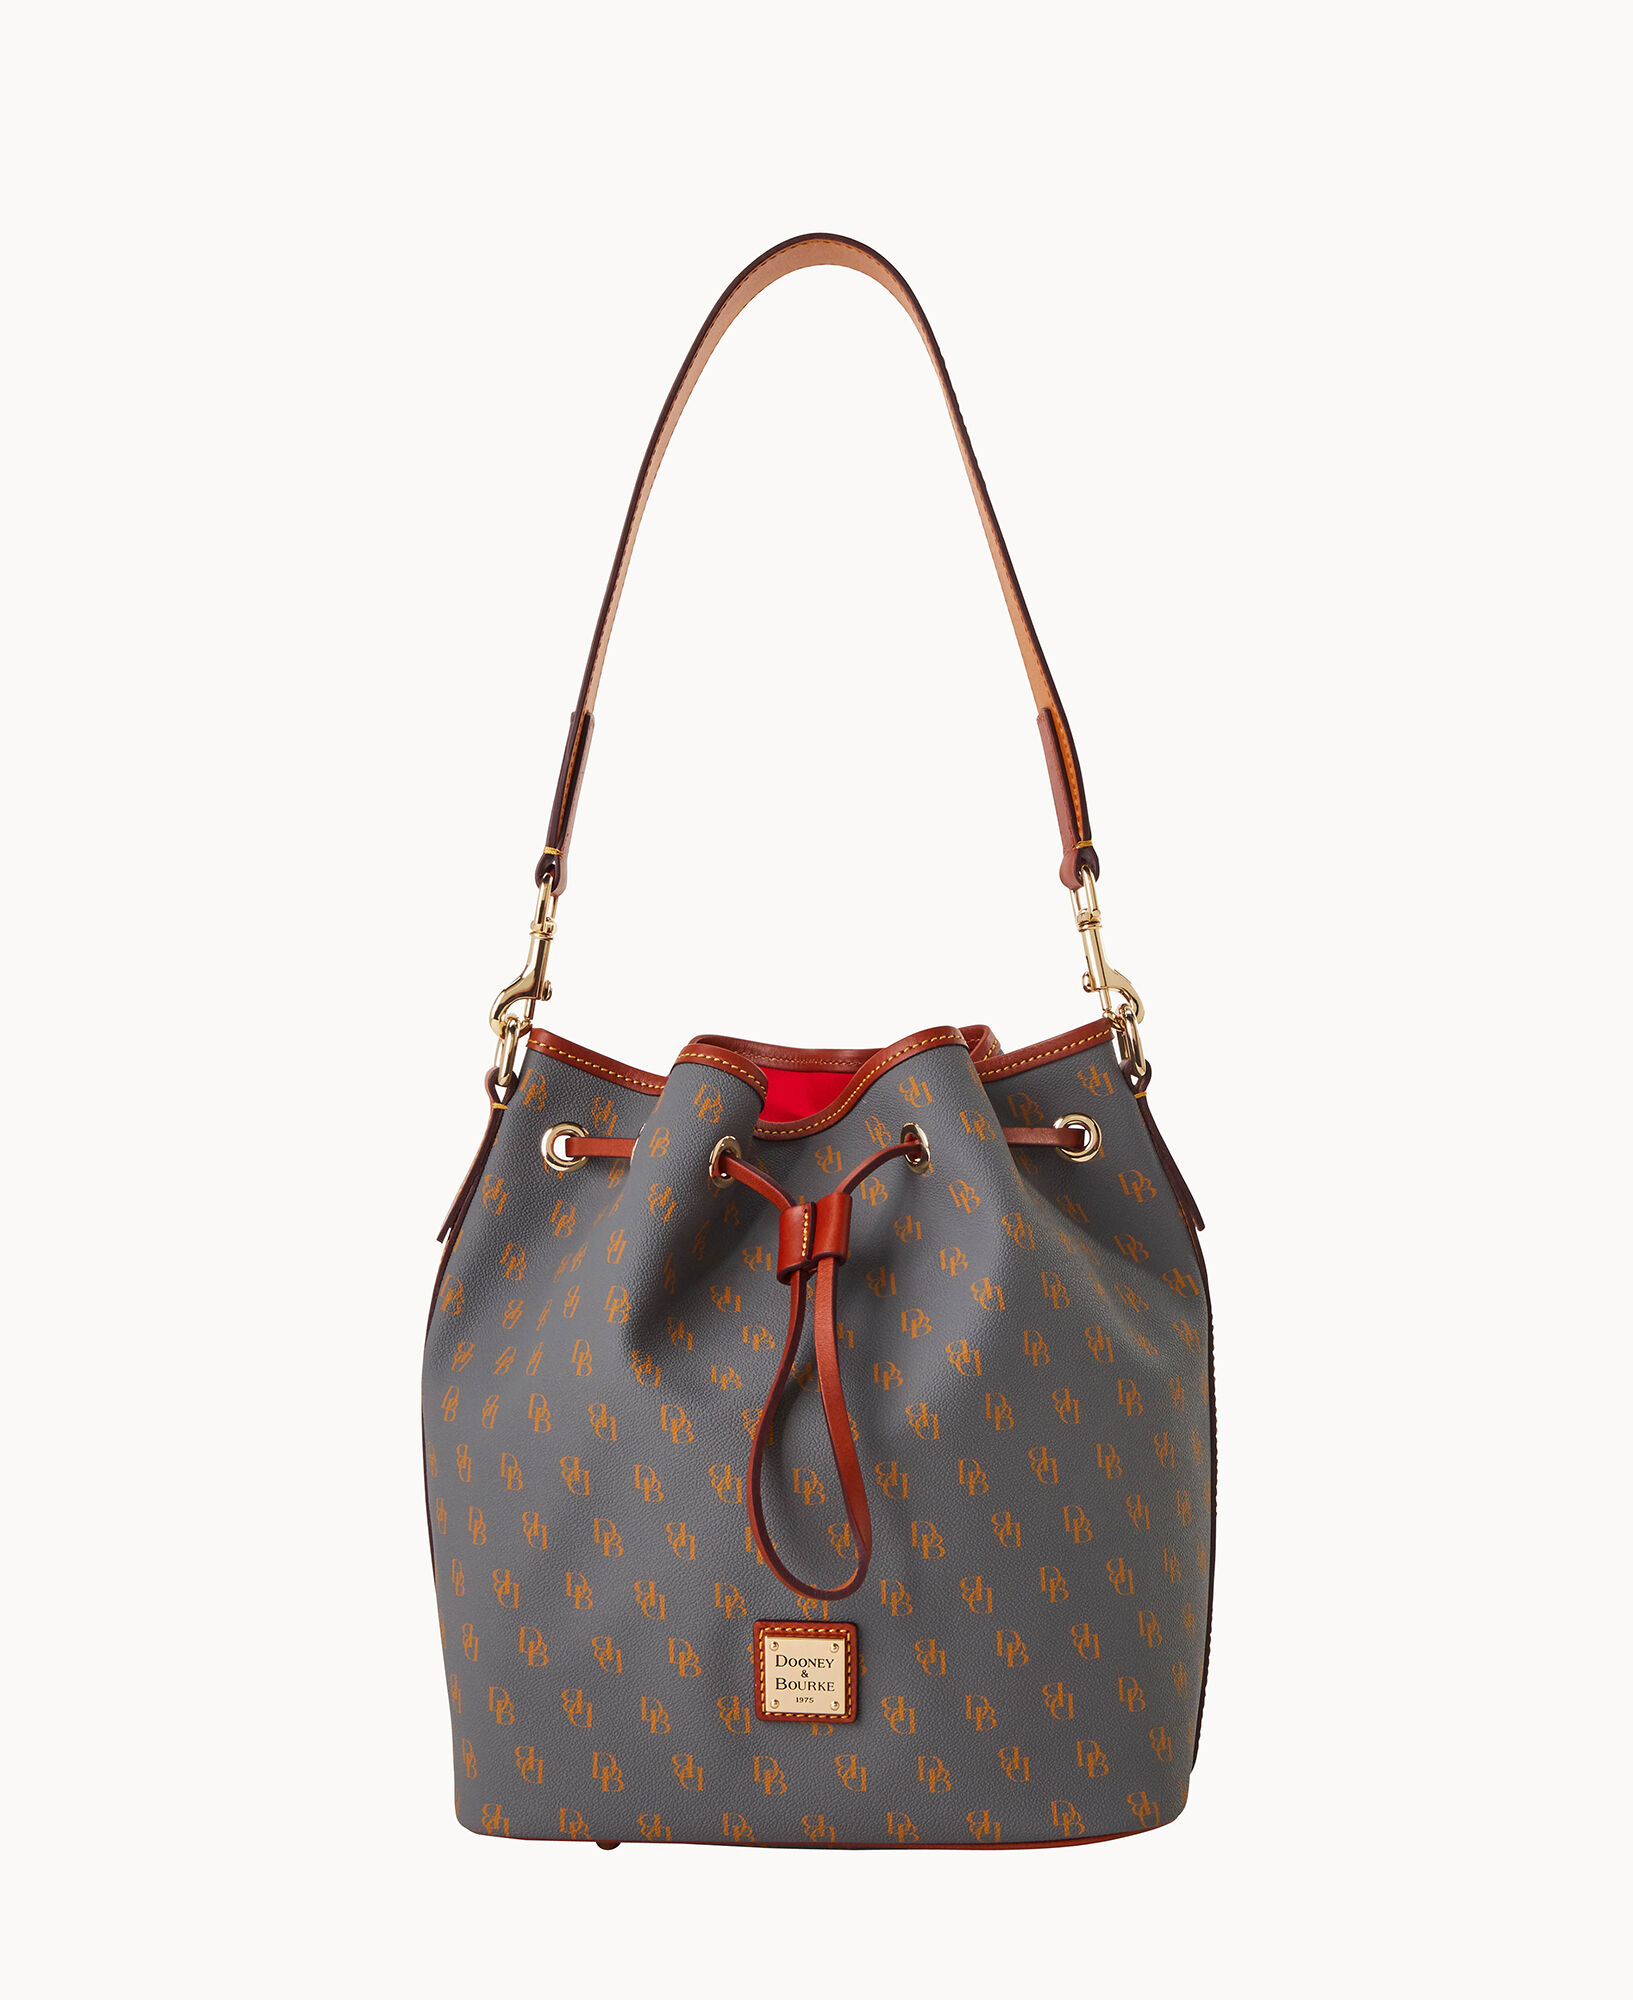 Dooney & Bourke Handbag, Gretta Drawstring